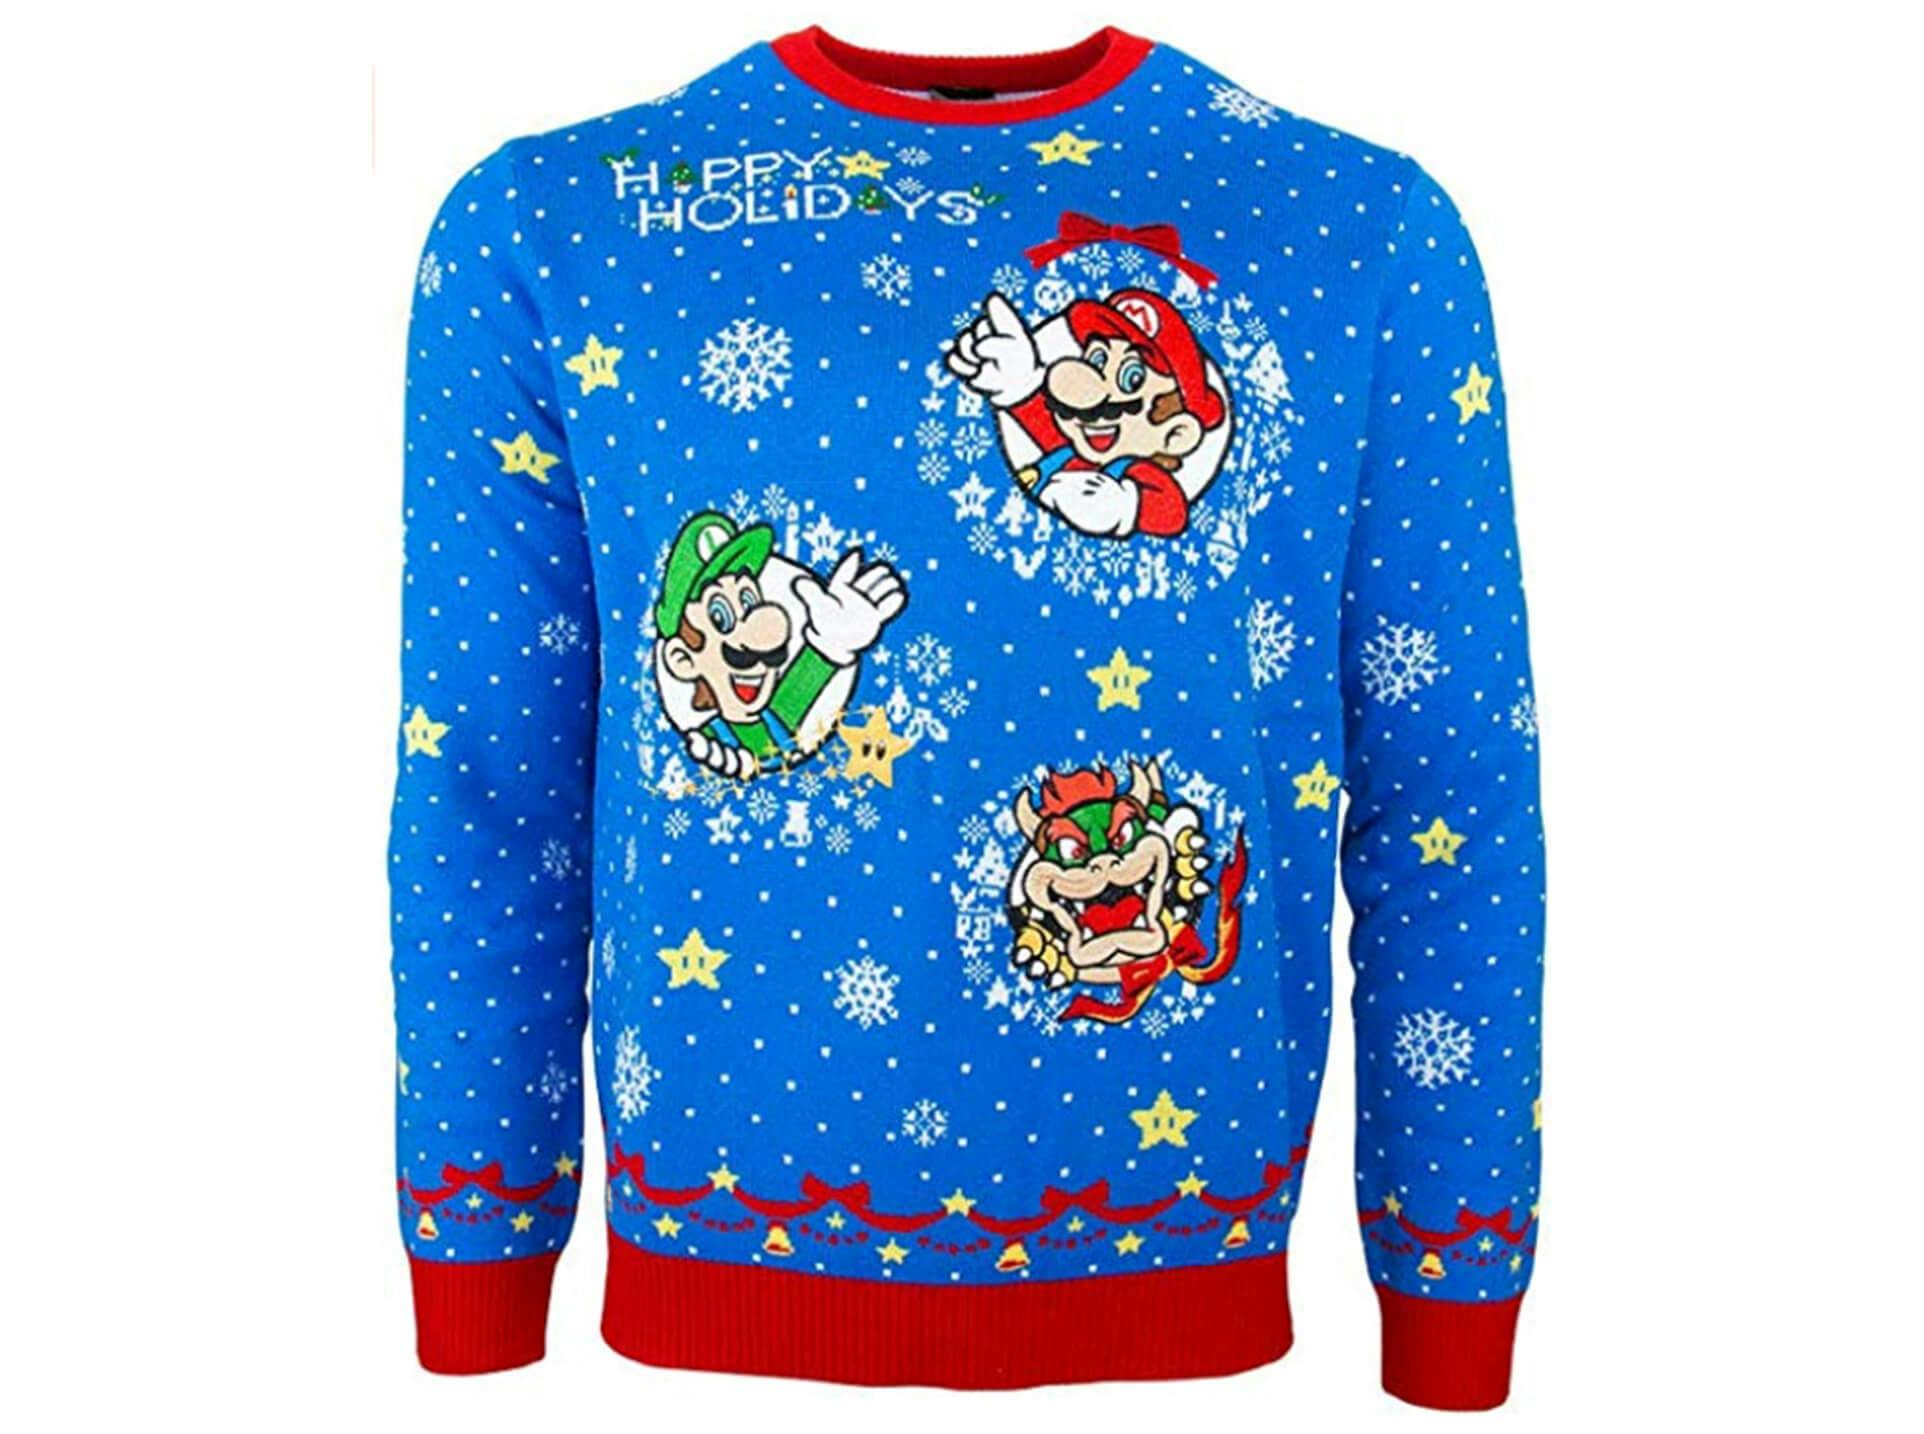 Mario Christmas sweater